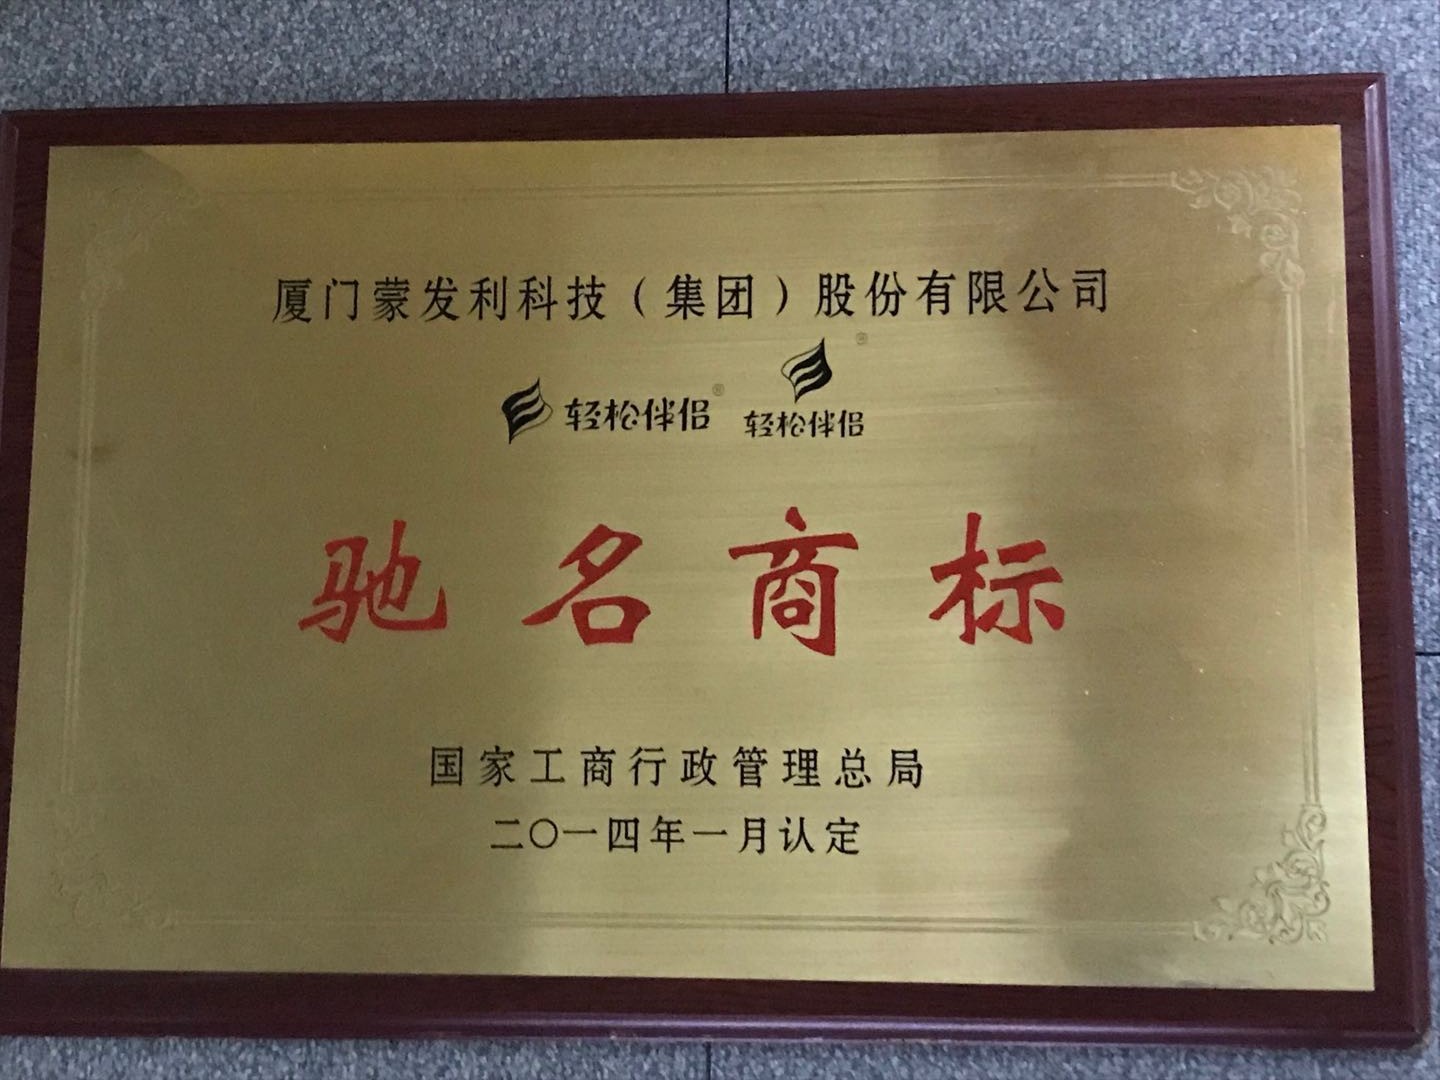 2014年獲得中國馳名商標